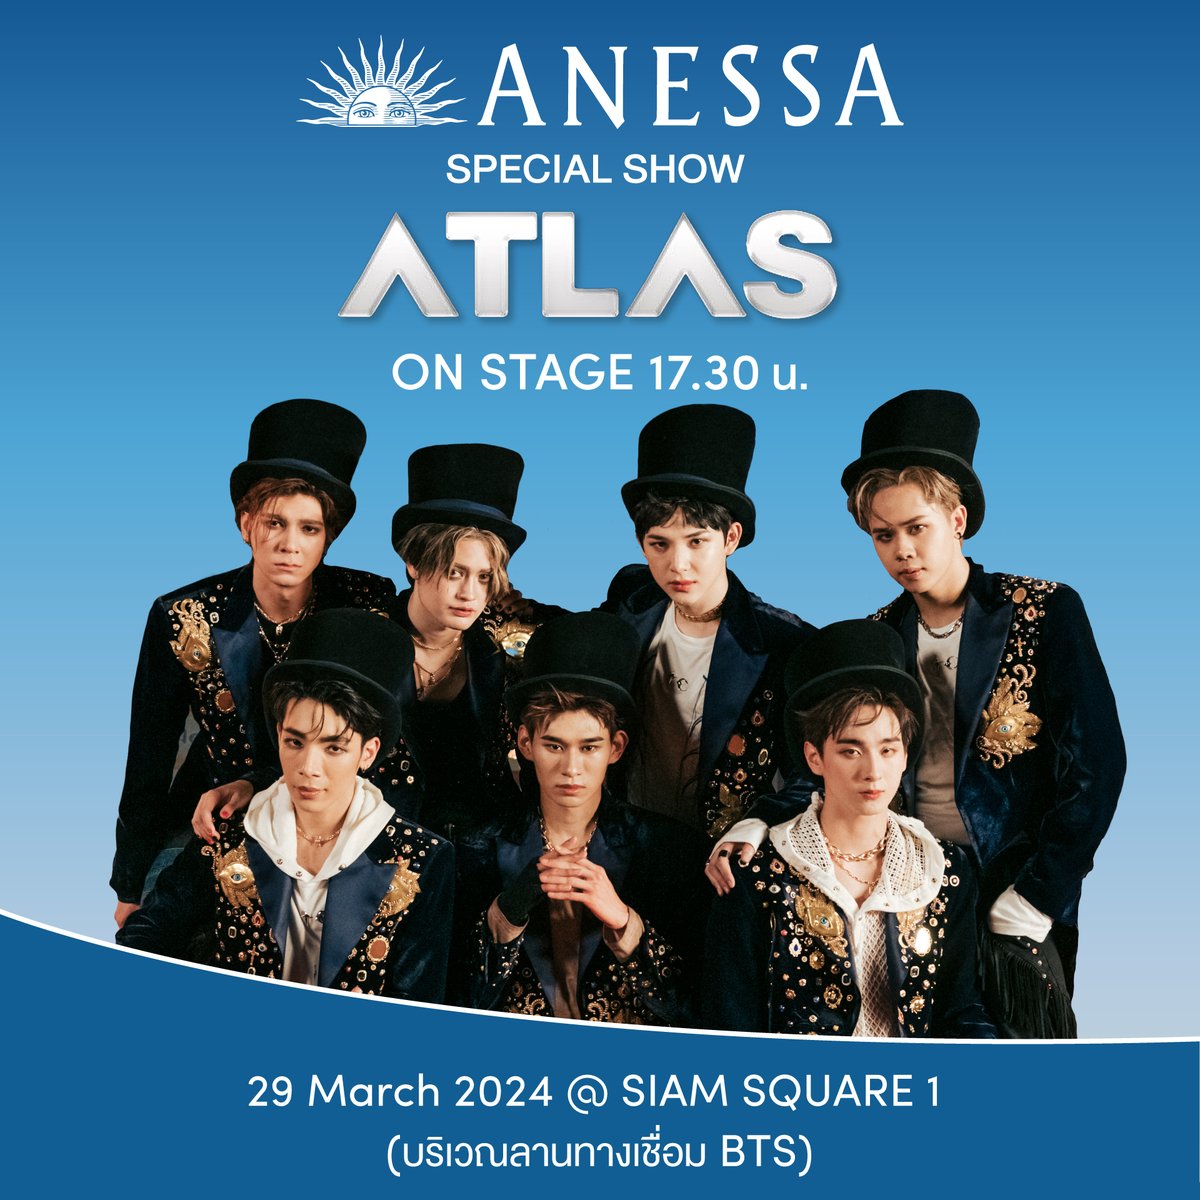 วันศุกร์ที่ 29 มีนาคม 2567 พบกิจกรรมสุดพิเศษภายในงานพร้อมรับผลิตภัณฑ์ทดลอง ANESSA สูตรใหม่!
พร้อมการเปิดตัว Friend of ANESSA สกาย - วงศ์รวี นทีธร
และ Special Show สุดพิเศษจากศิลปินวง ATLAS

⏰เวลา 10.00 – 20.00 น.
📍@ Siam Square 1 (บริเวณทางเชื่อม BTS)